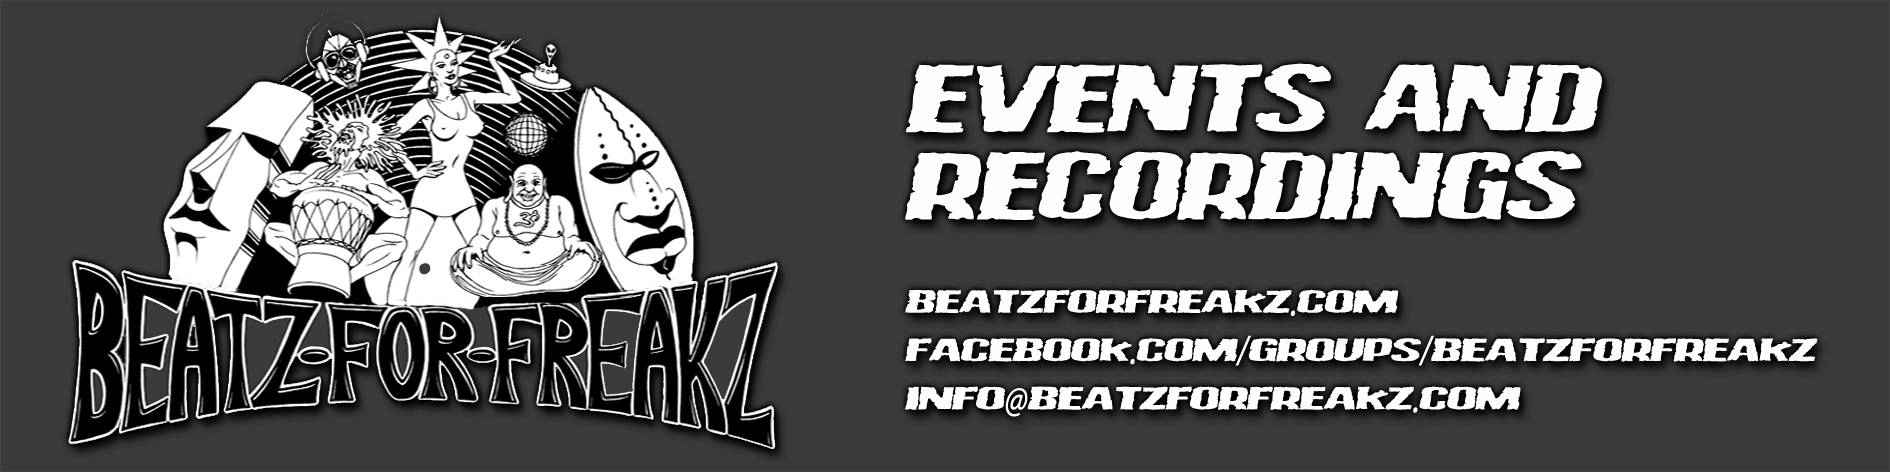 Beatz for Freakz Logo Big